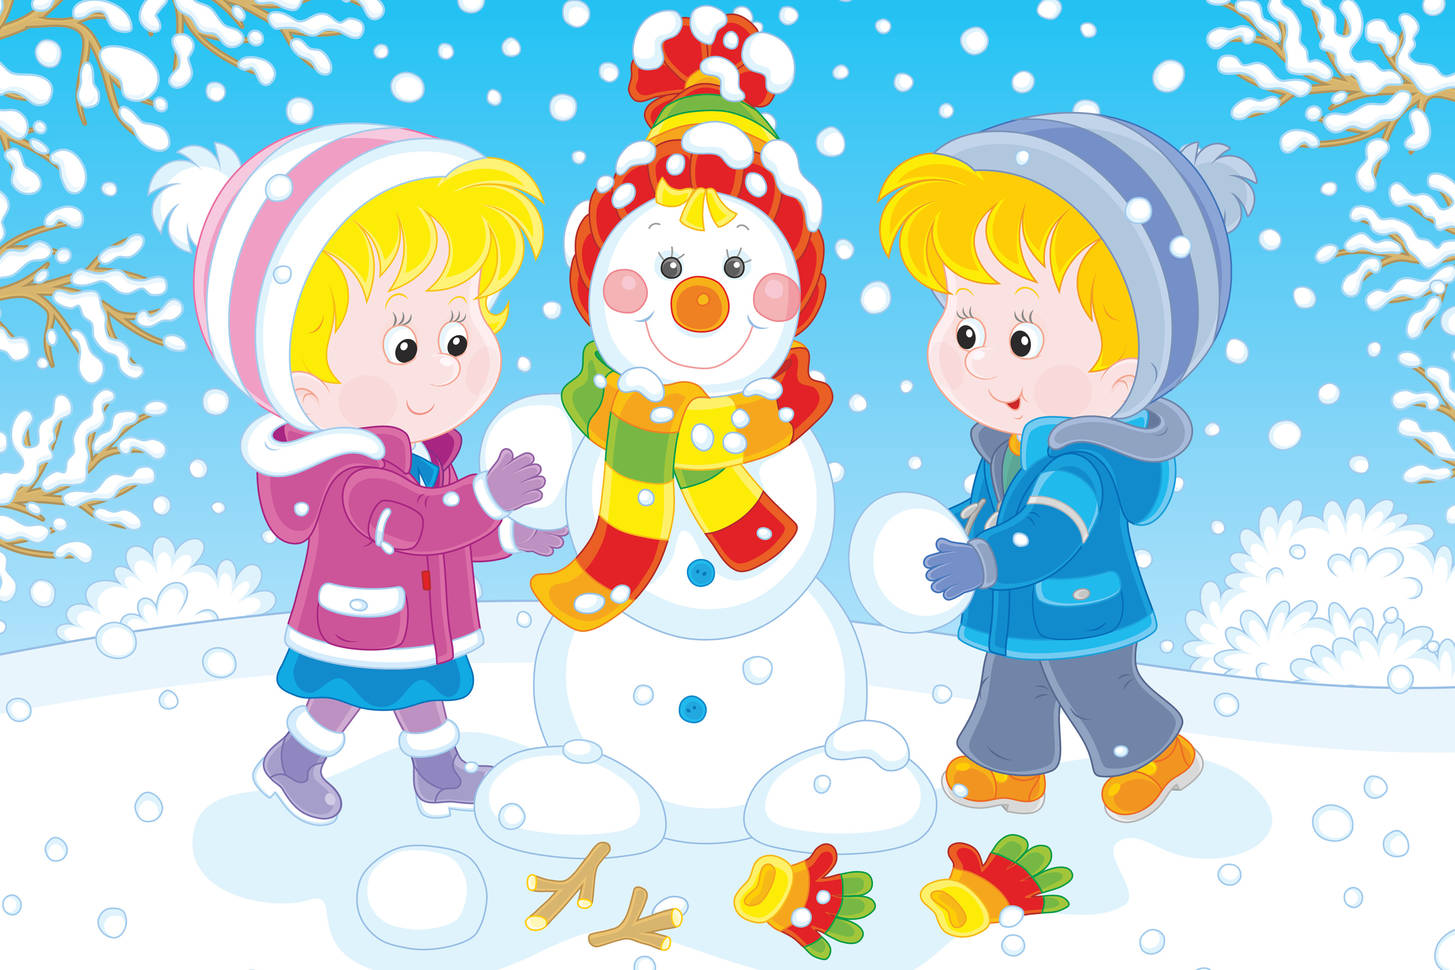 Детский рисунок дети лепят снеговика